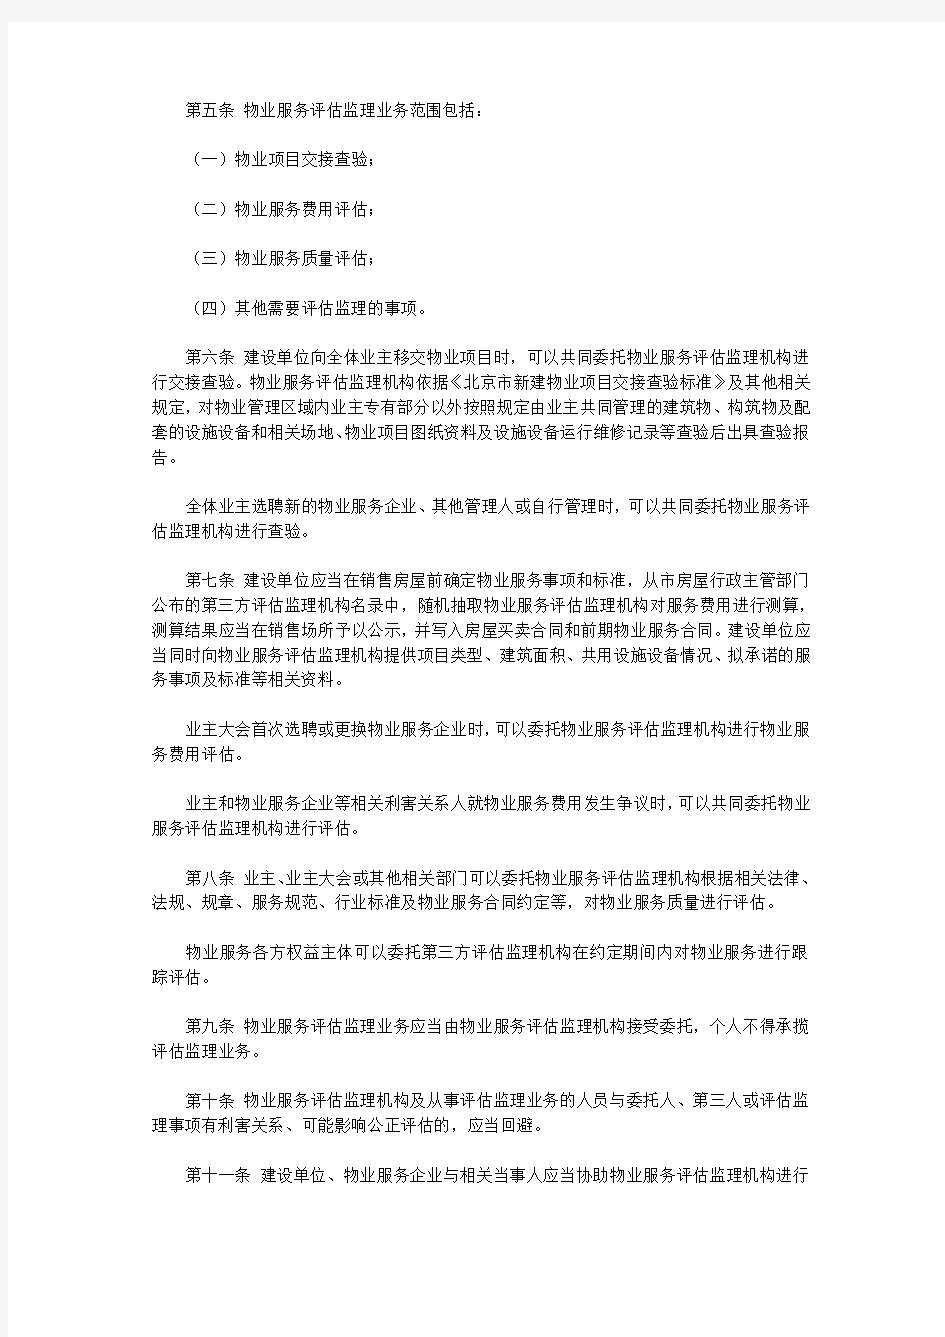 关于印发《北京市物业服务第三方评估监理管理办法》的通知